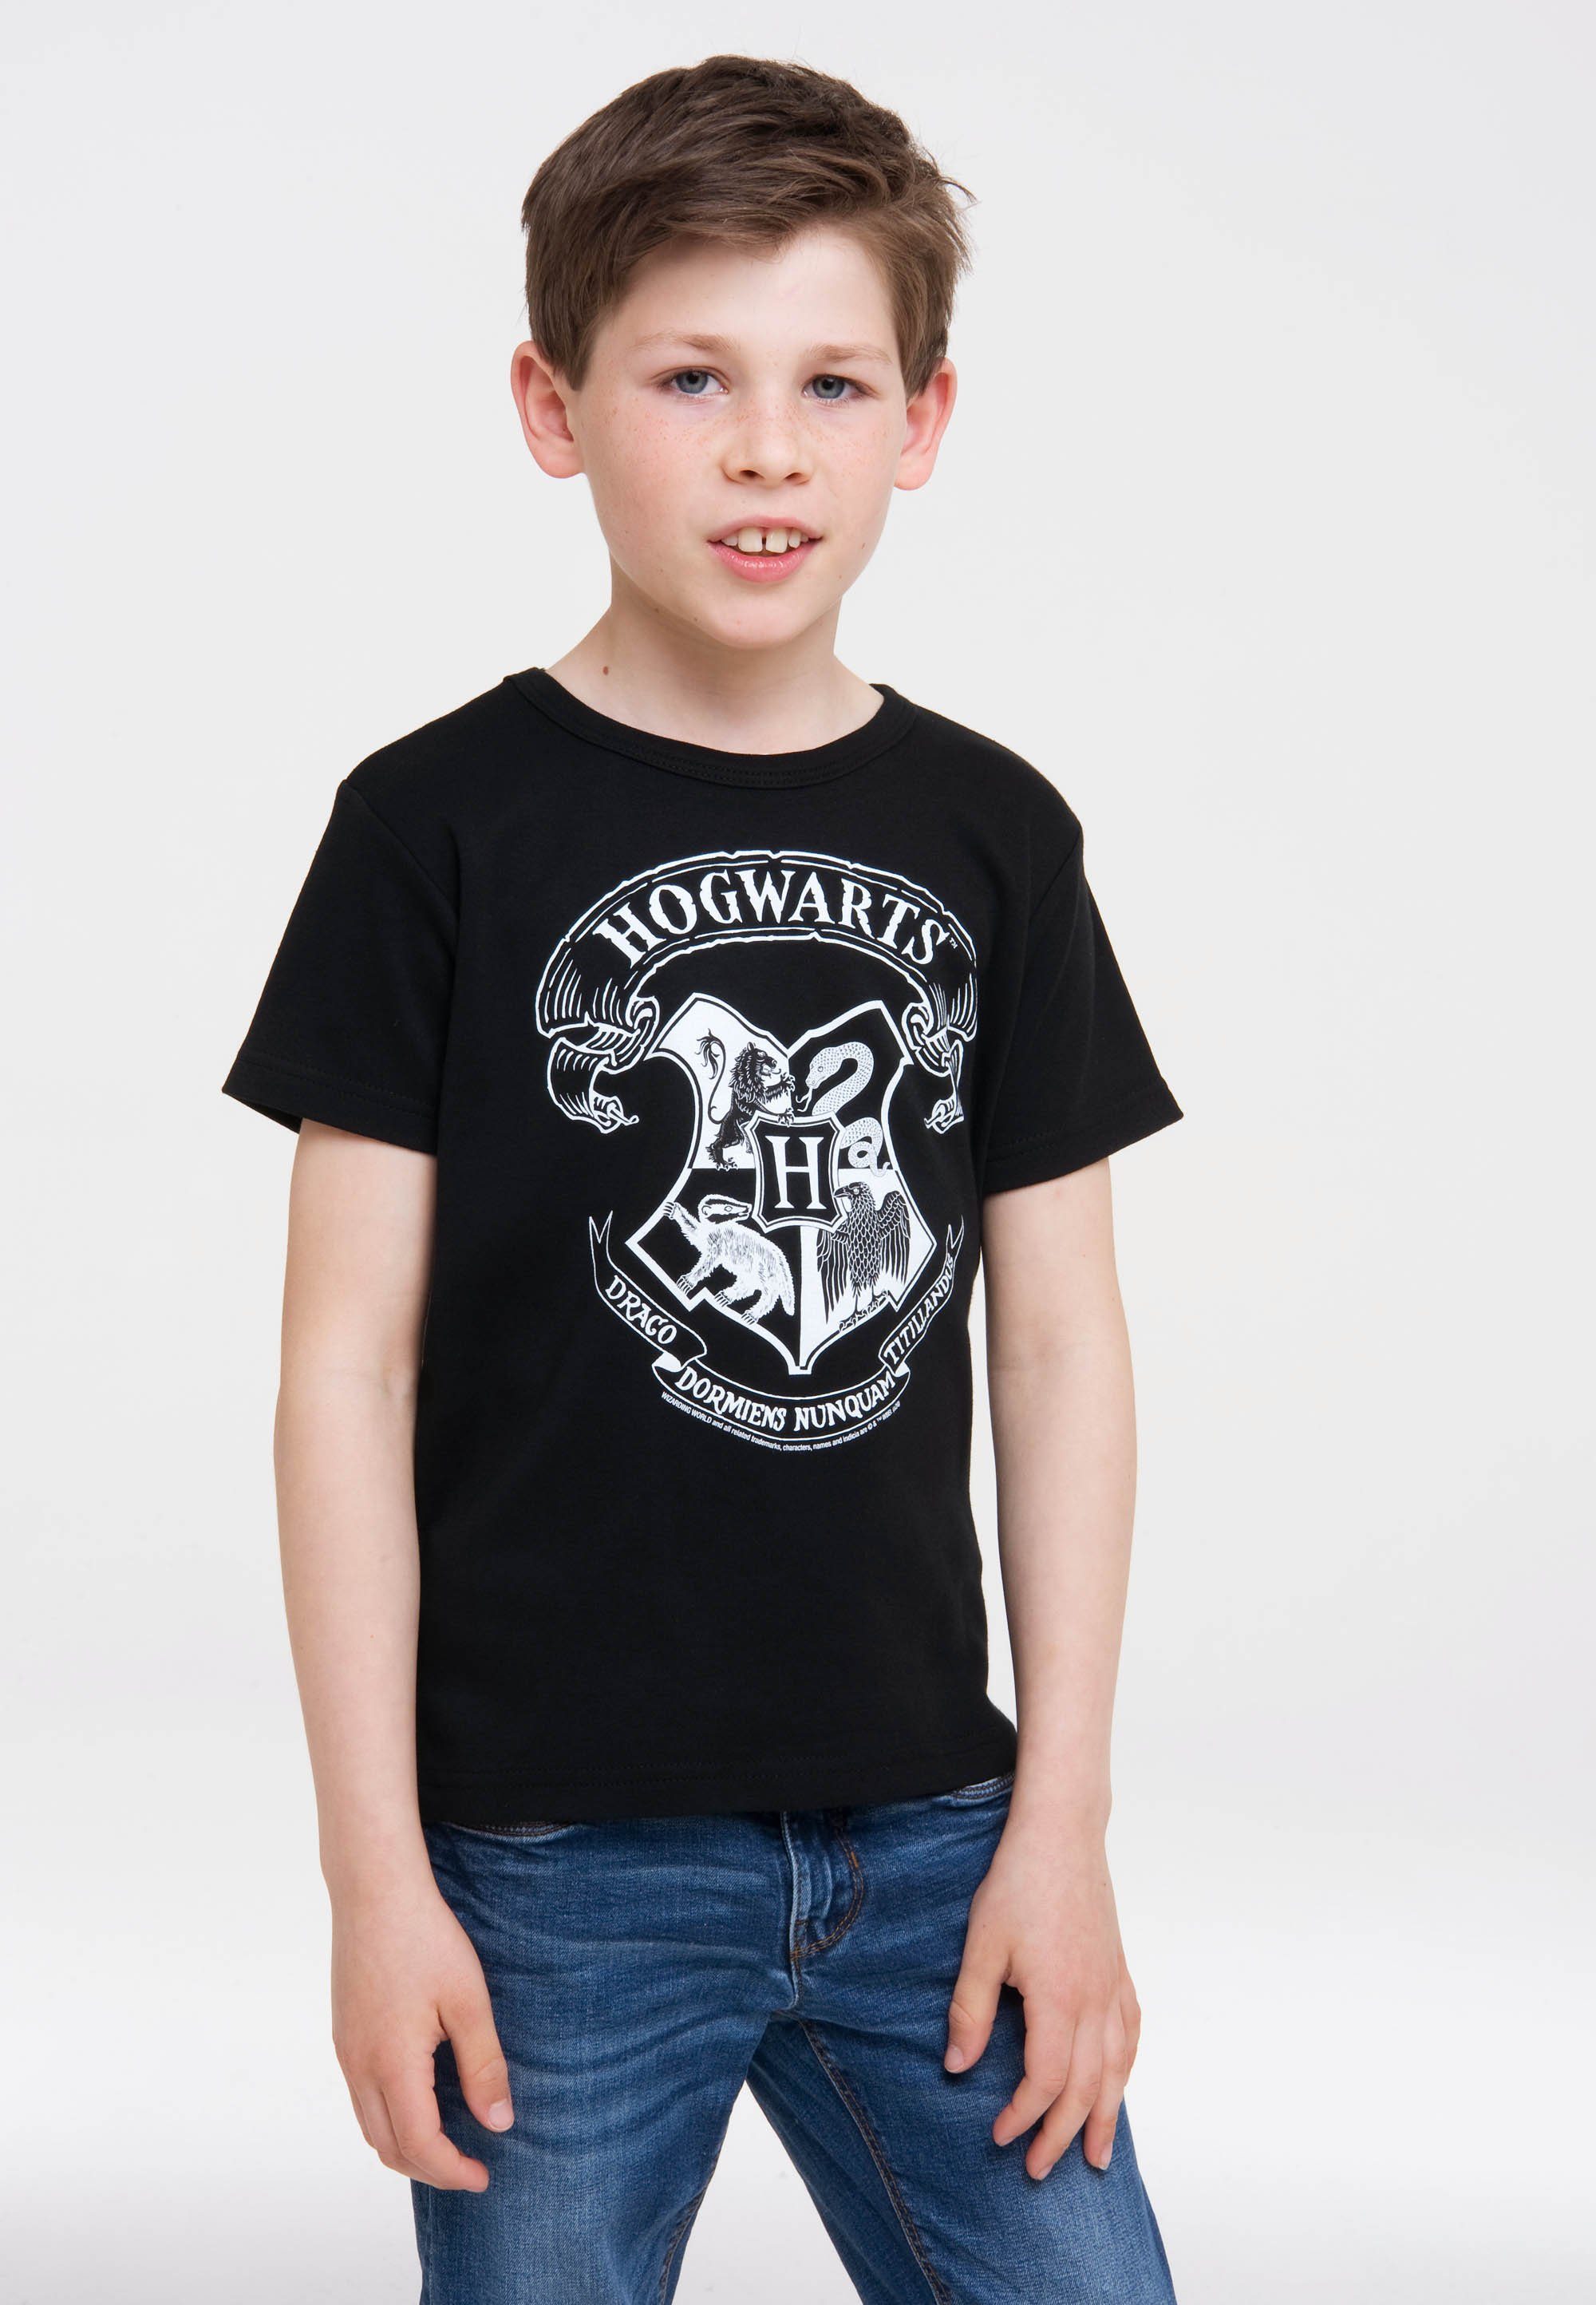 Logo LOGOSHIRT Hogwarts Harry Potter Originaldesign T-Shirt (Weiß) lizenziertem - mit